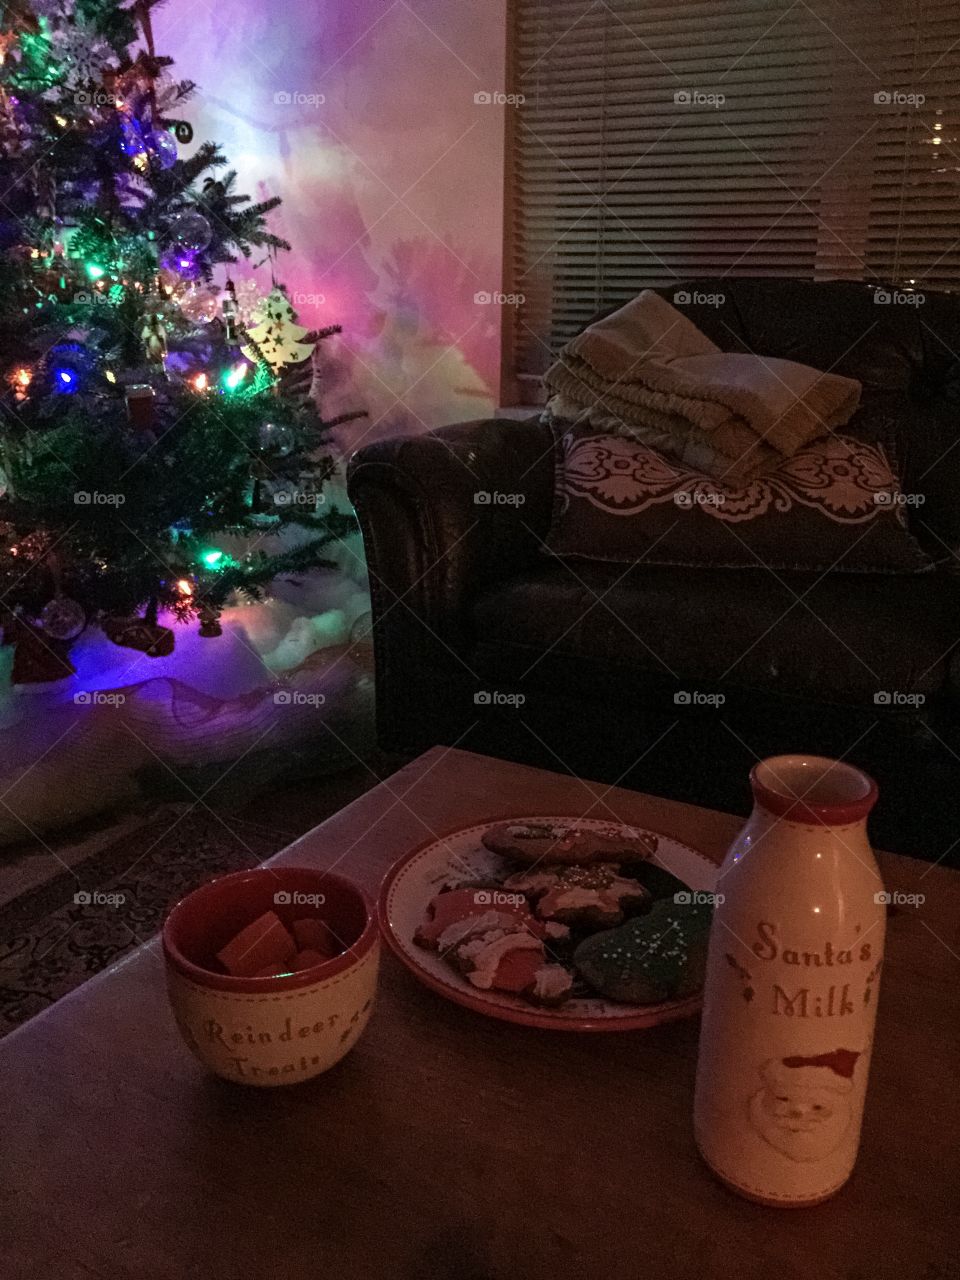 Preparing snacks for Santa and reindeer